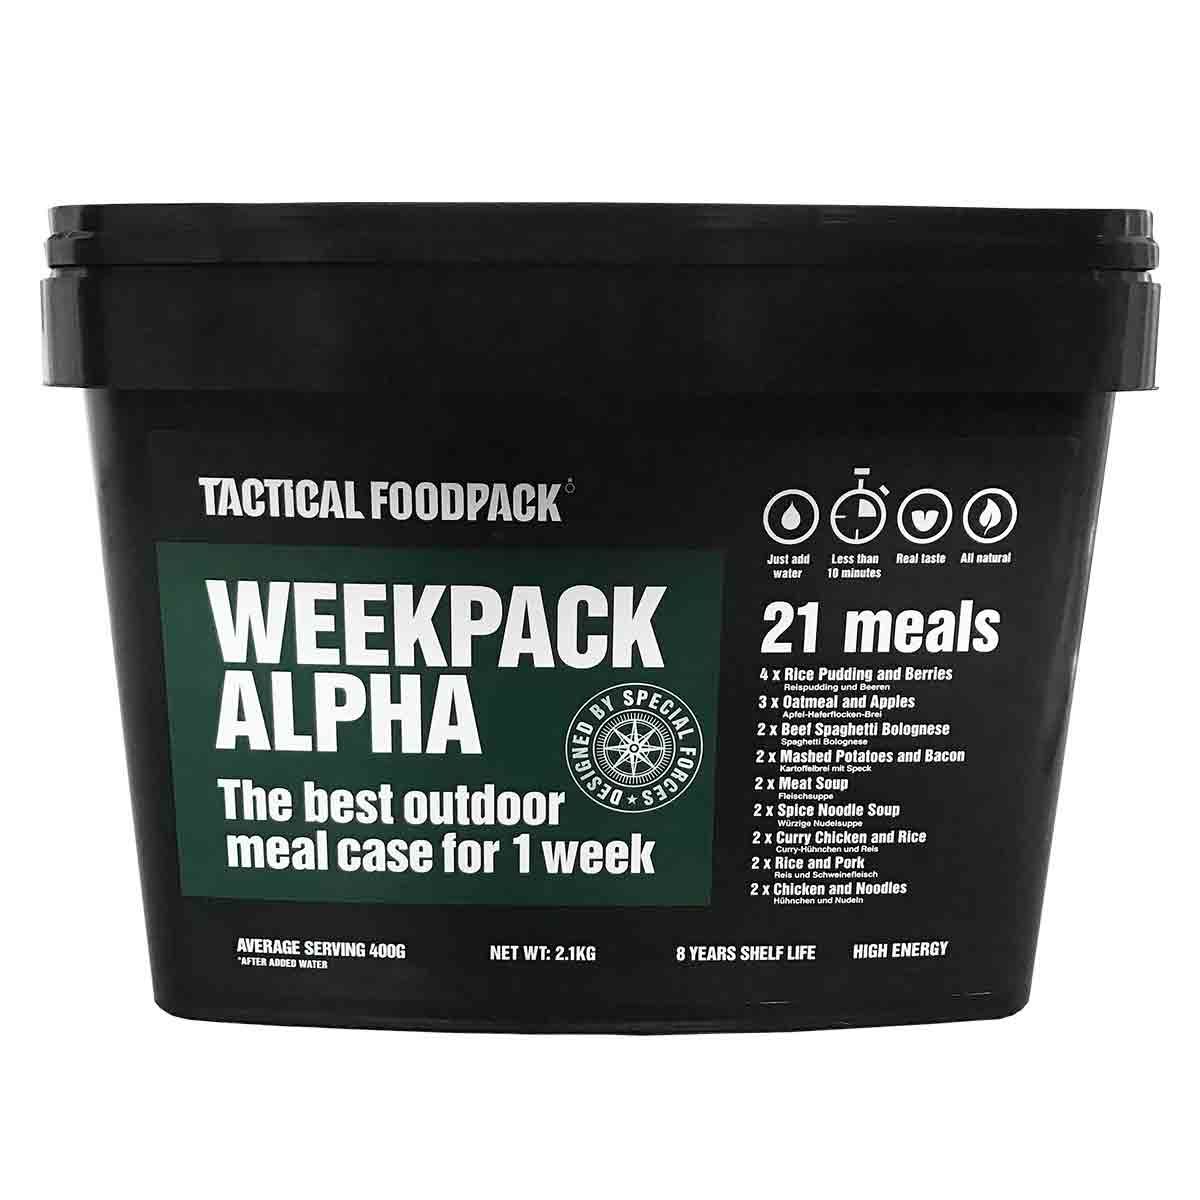 Pack 7 jours en seau - Tactical WeekPack Alpha - 8 ans